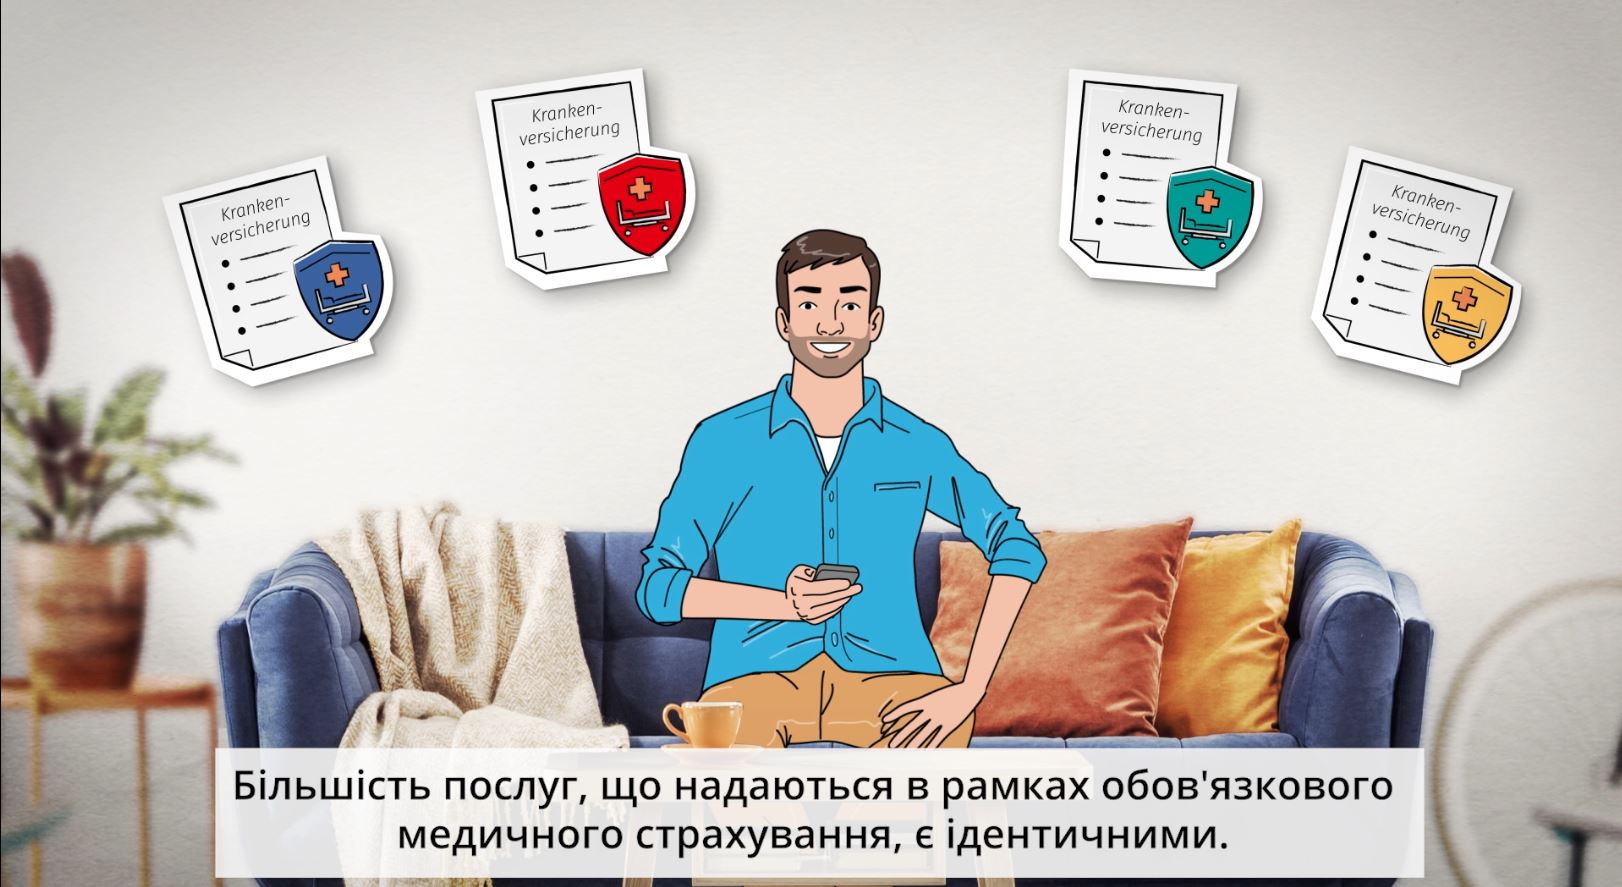 Ein Mann sitzt auf einem Sofa, über ihm erscheinen Symbole für verschiedene Versicherungsarten